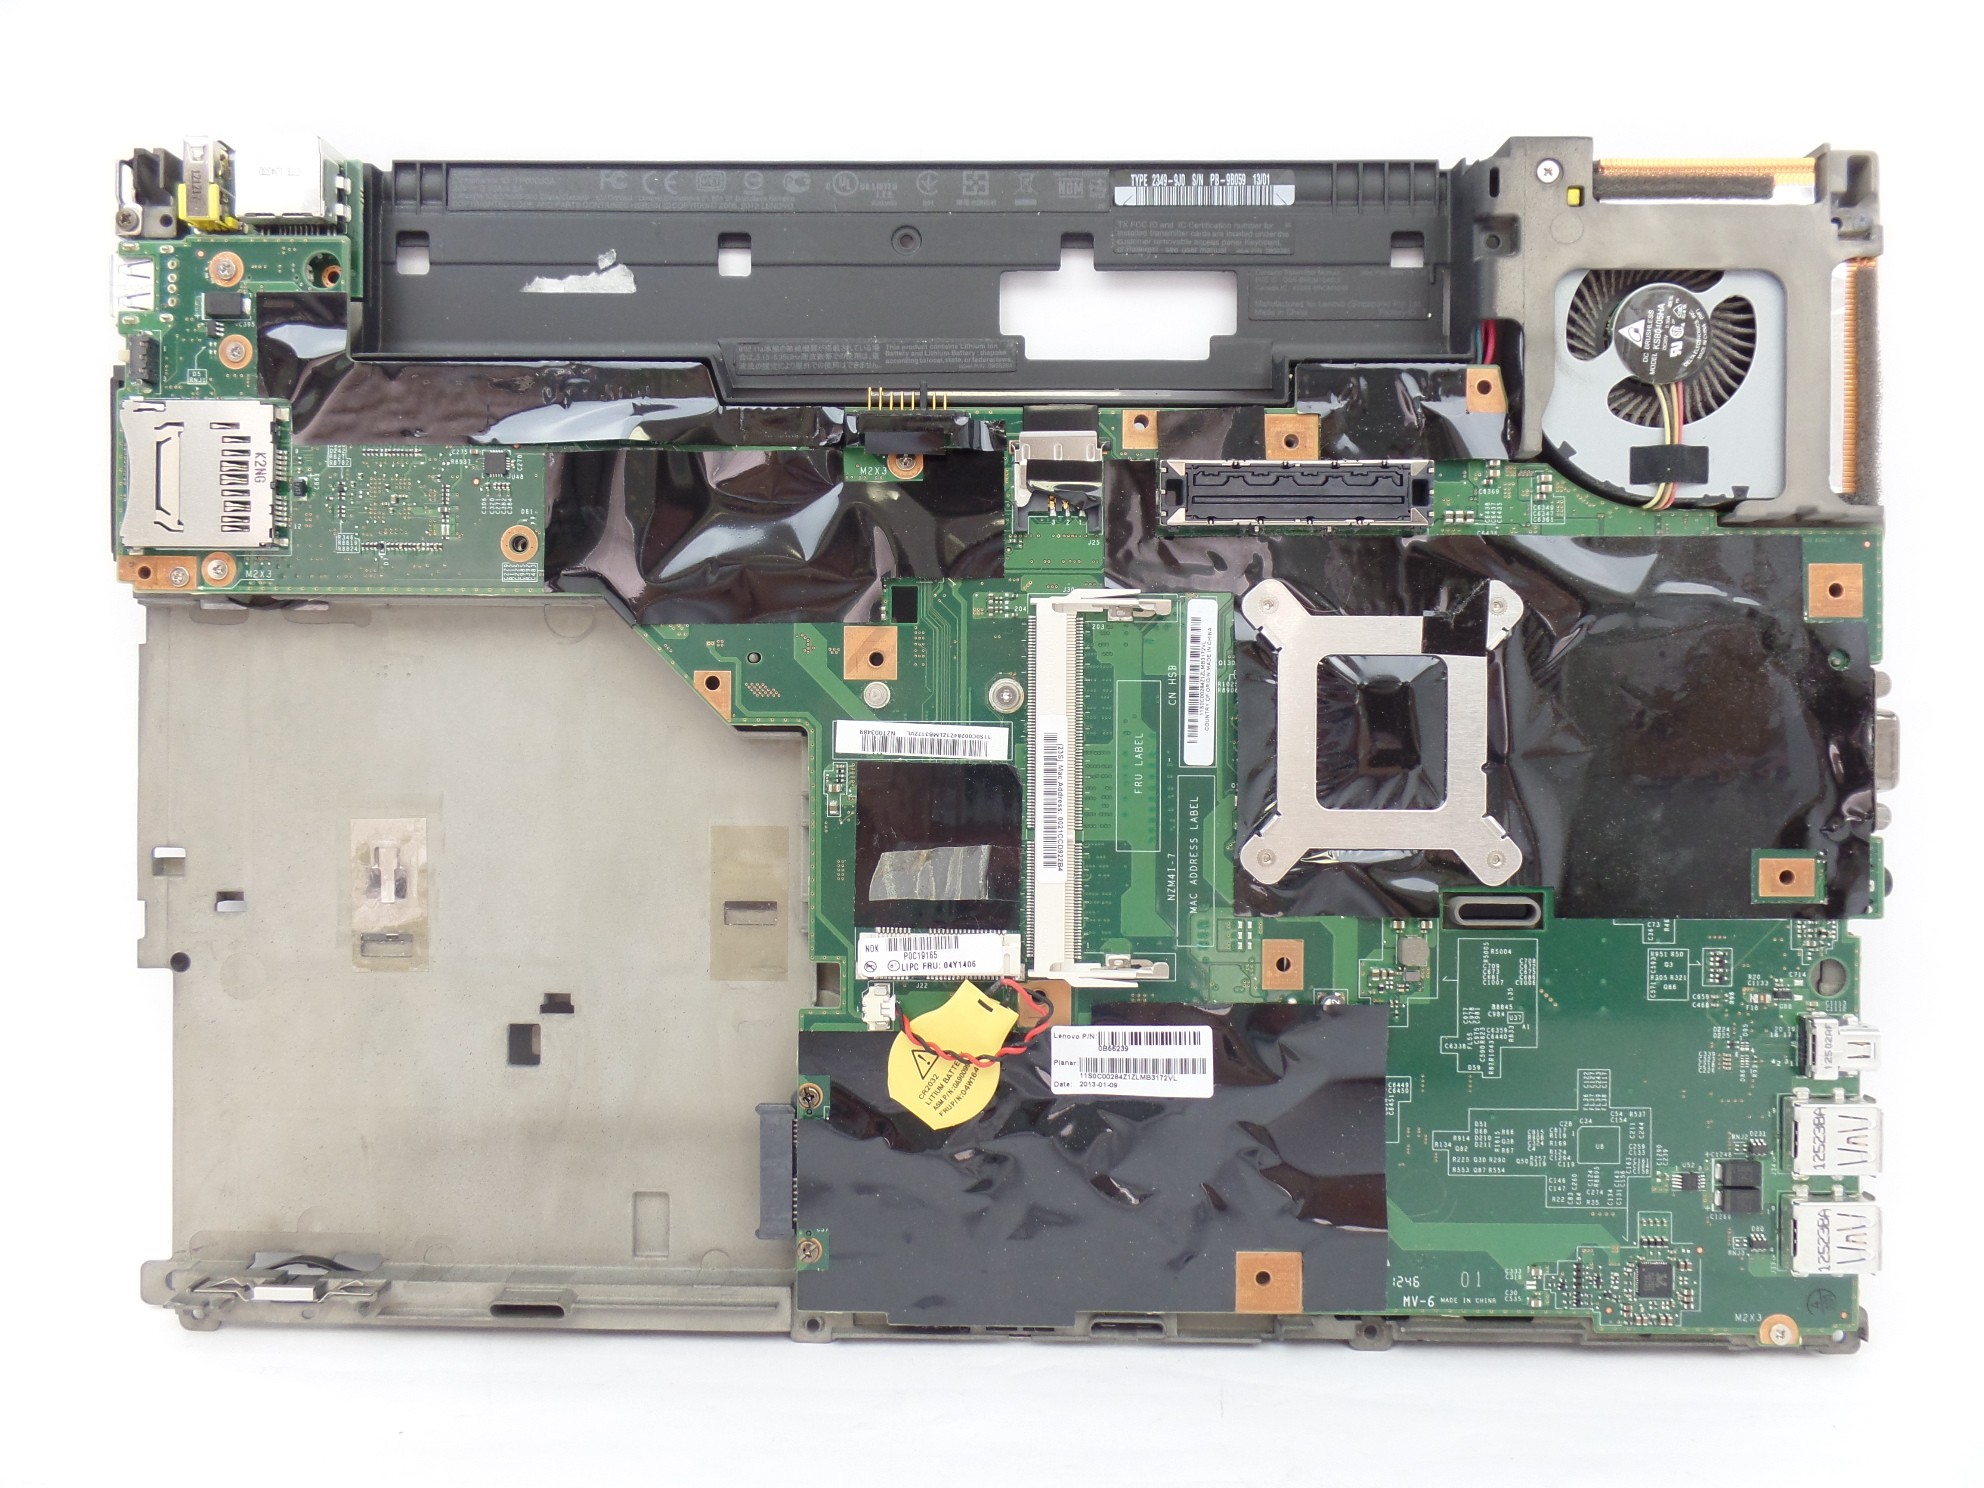 OEM Motherboard i5-3320M for Lenovo T430 23499J0 